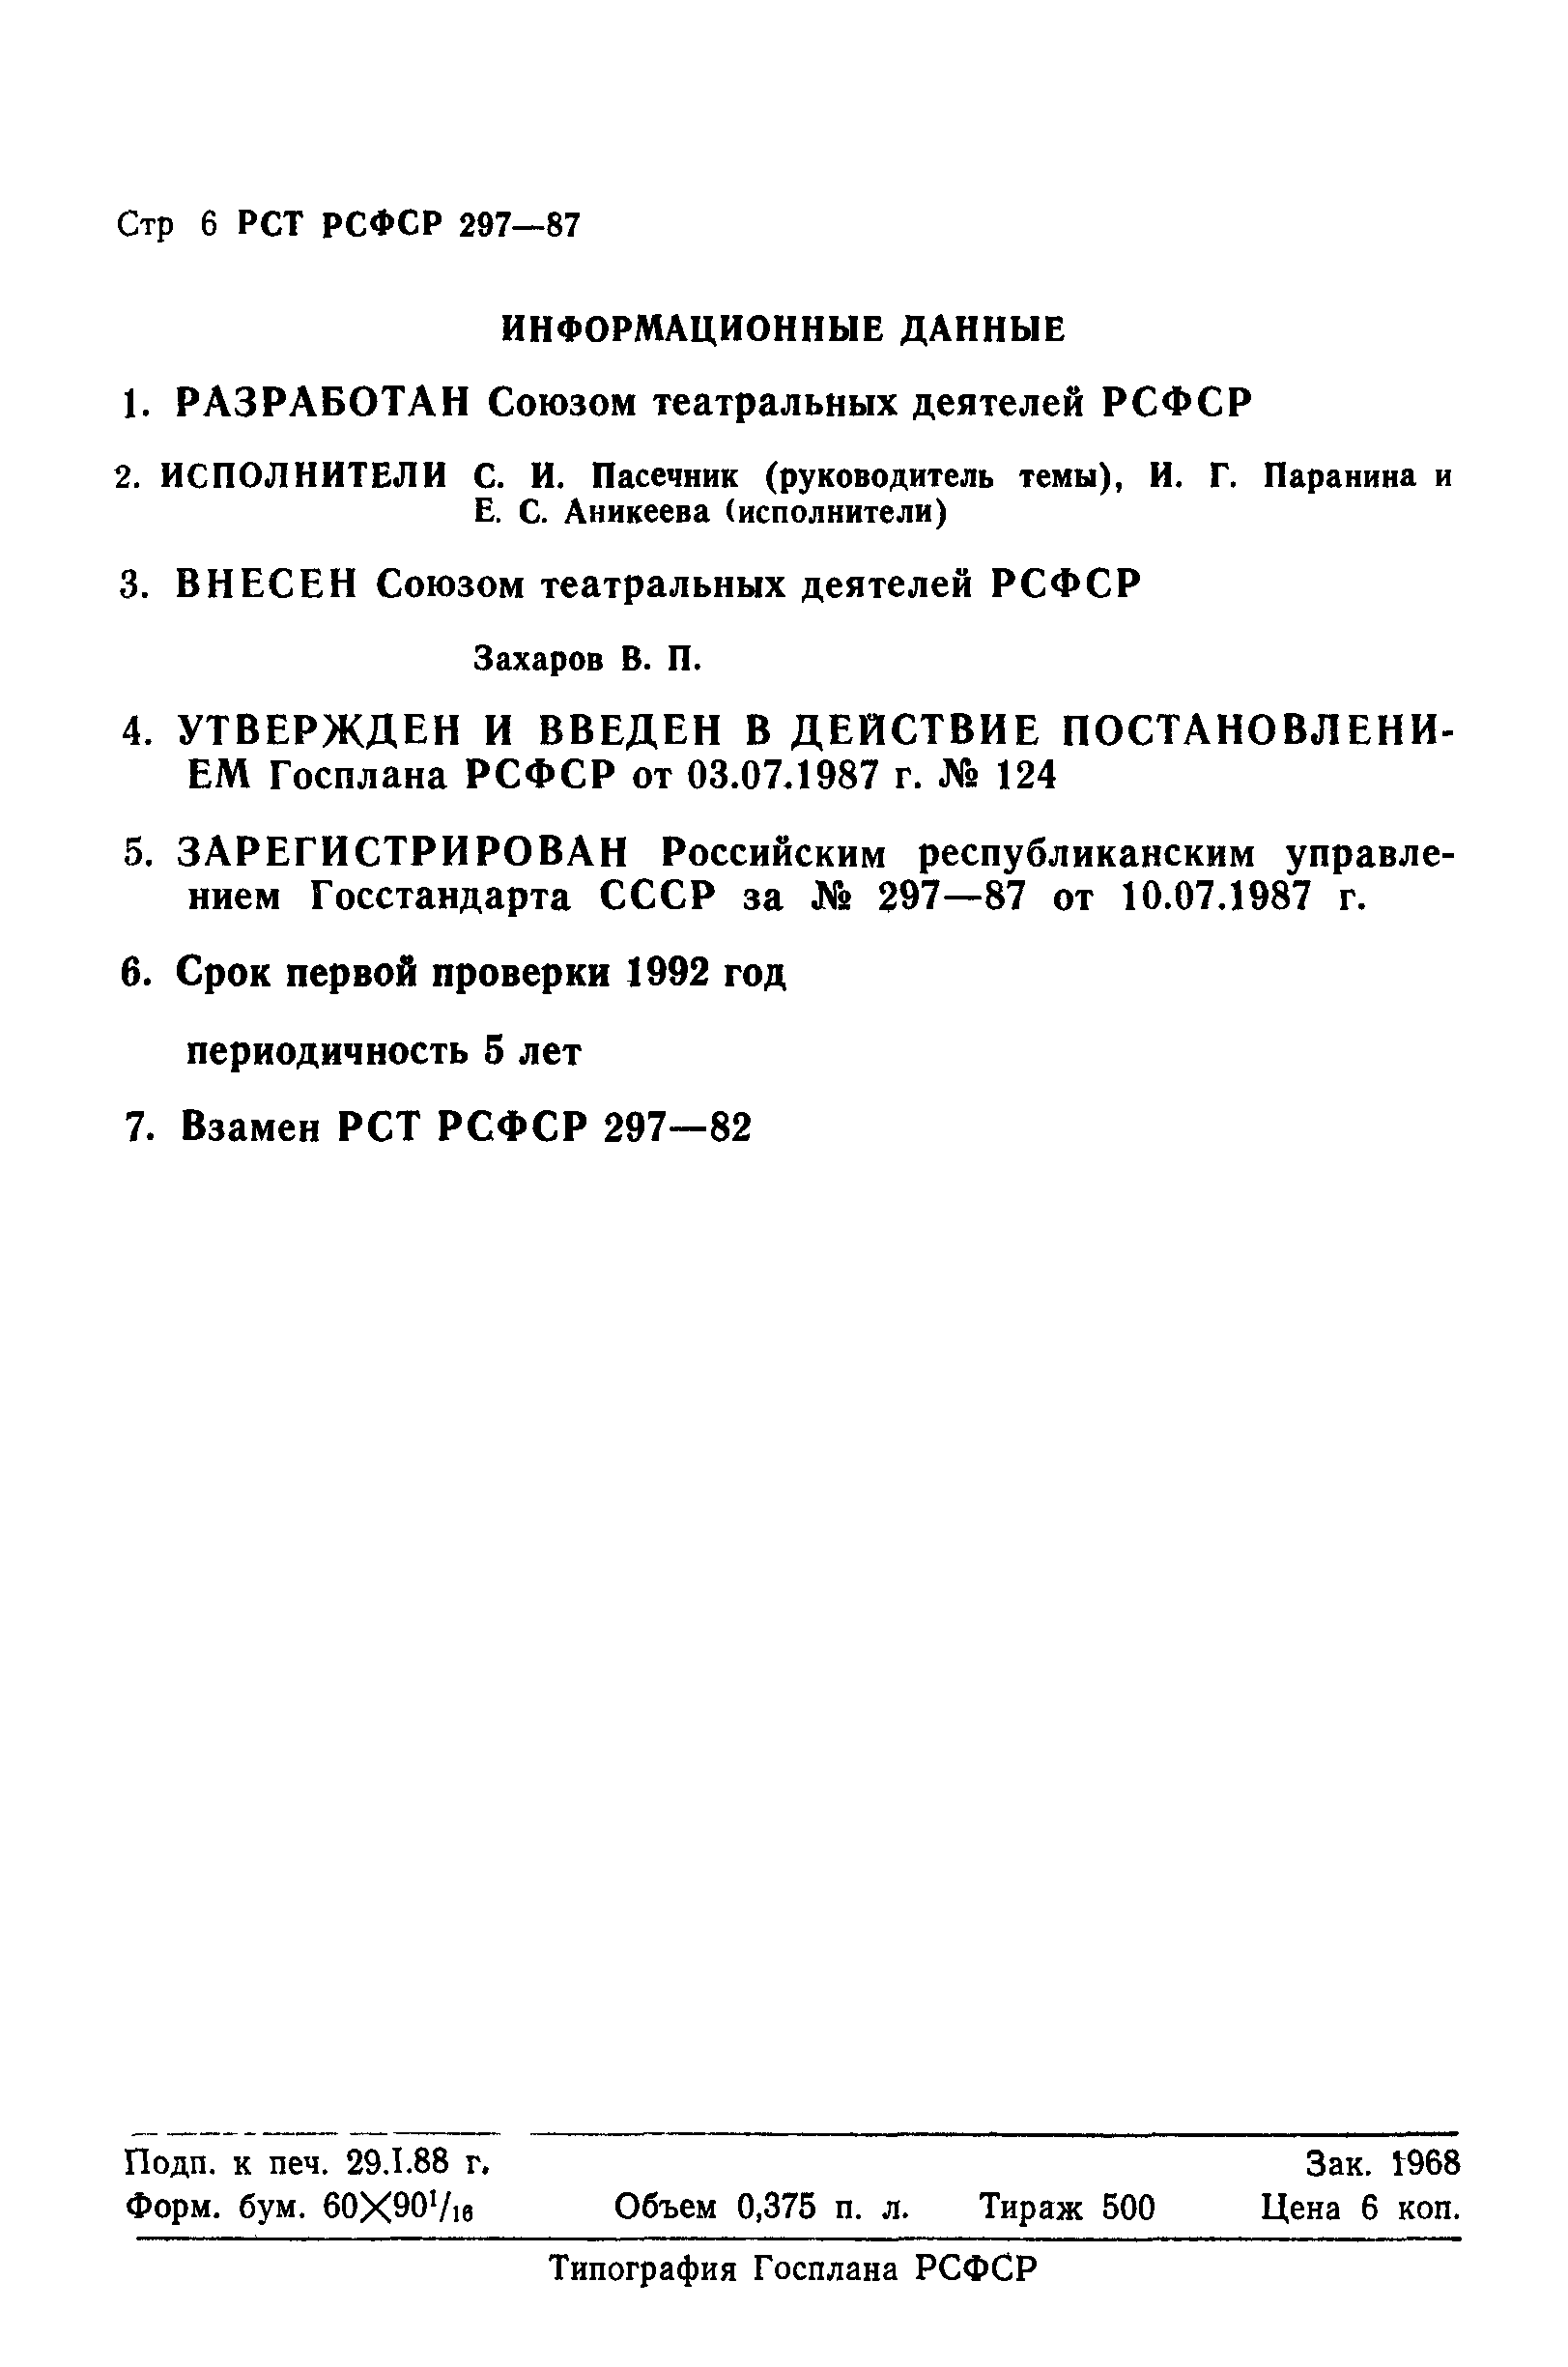 РСТ РСФСР 297-87